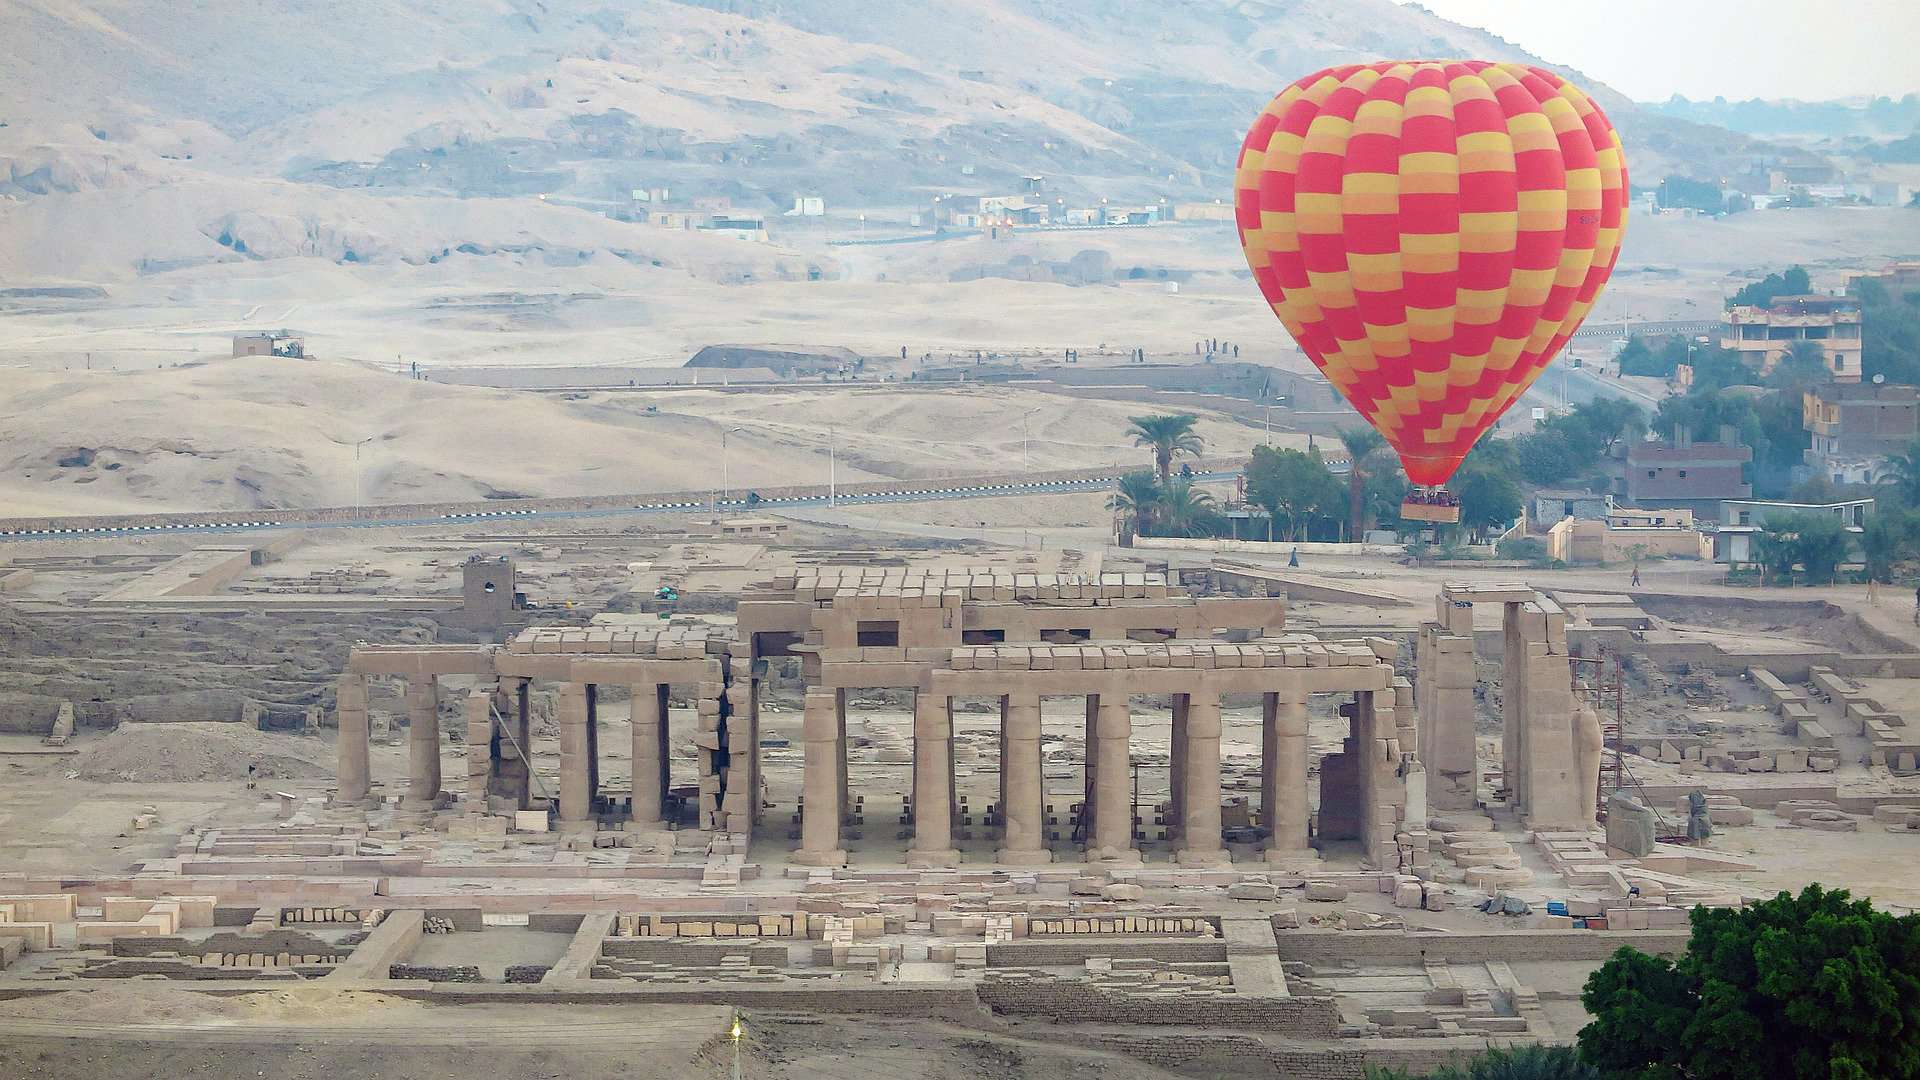 Hot air balloon over Luxor